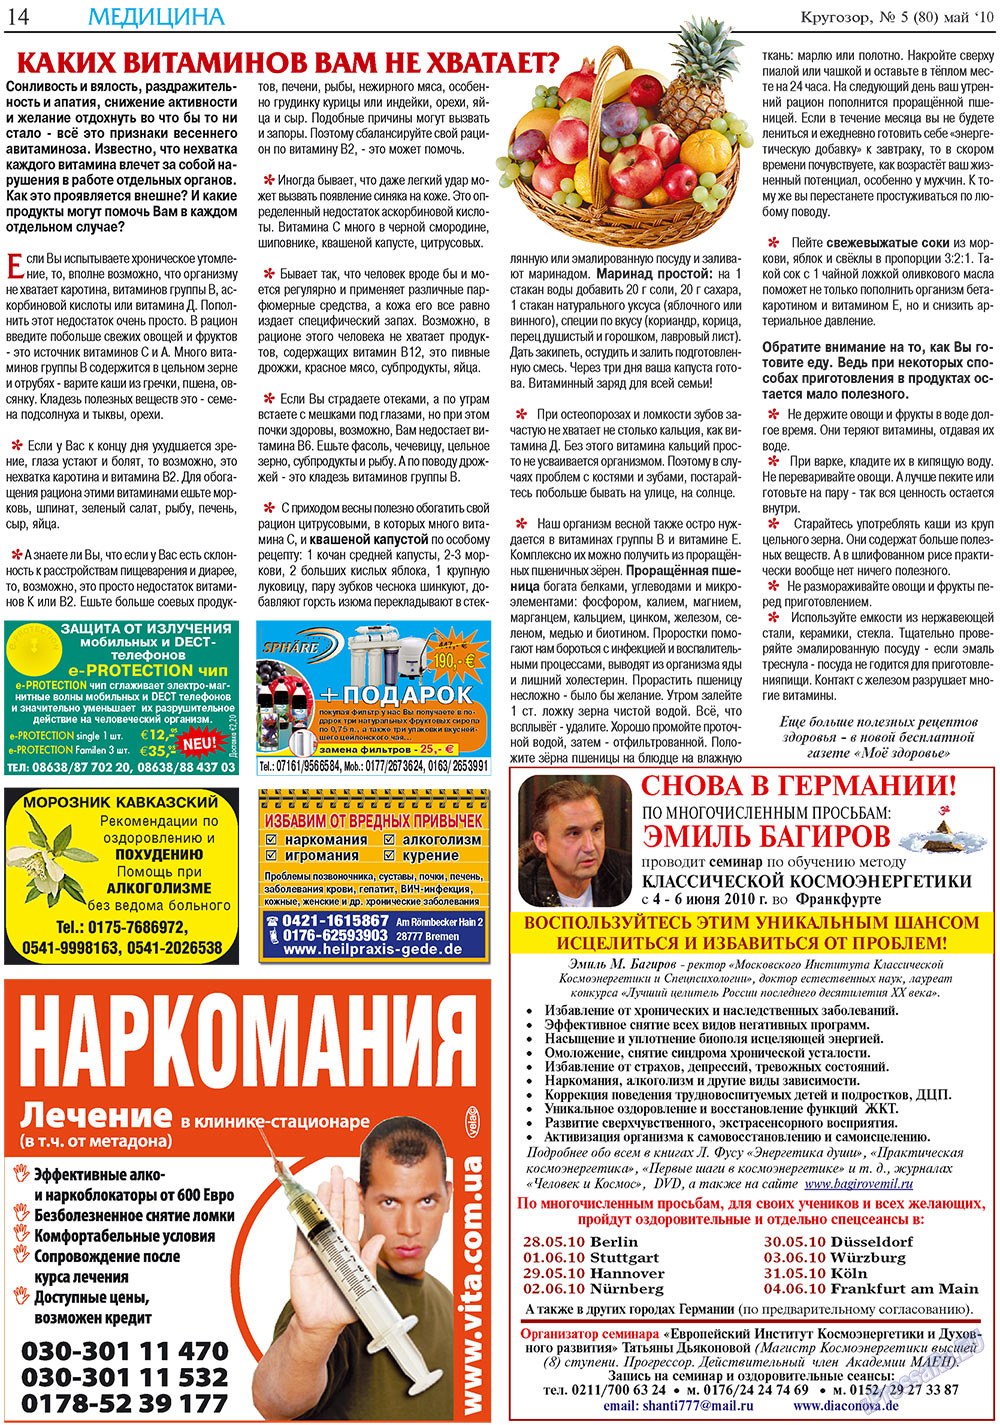 Кругозор плюс!, газета. 2010 №5 стр.14